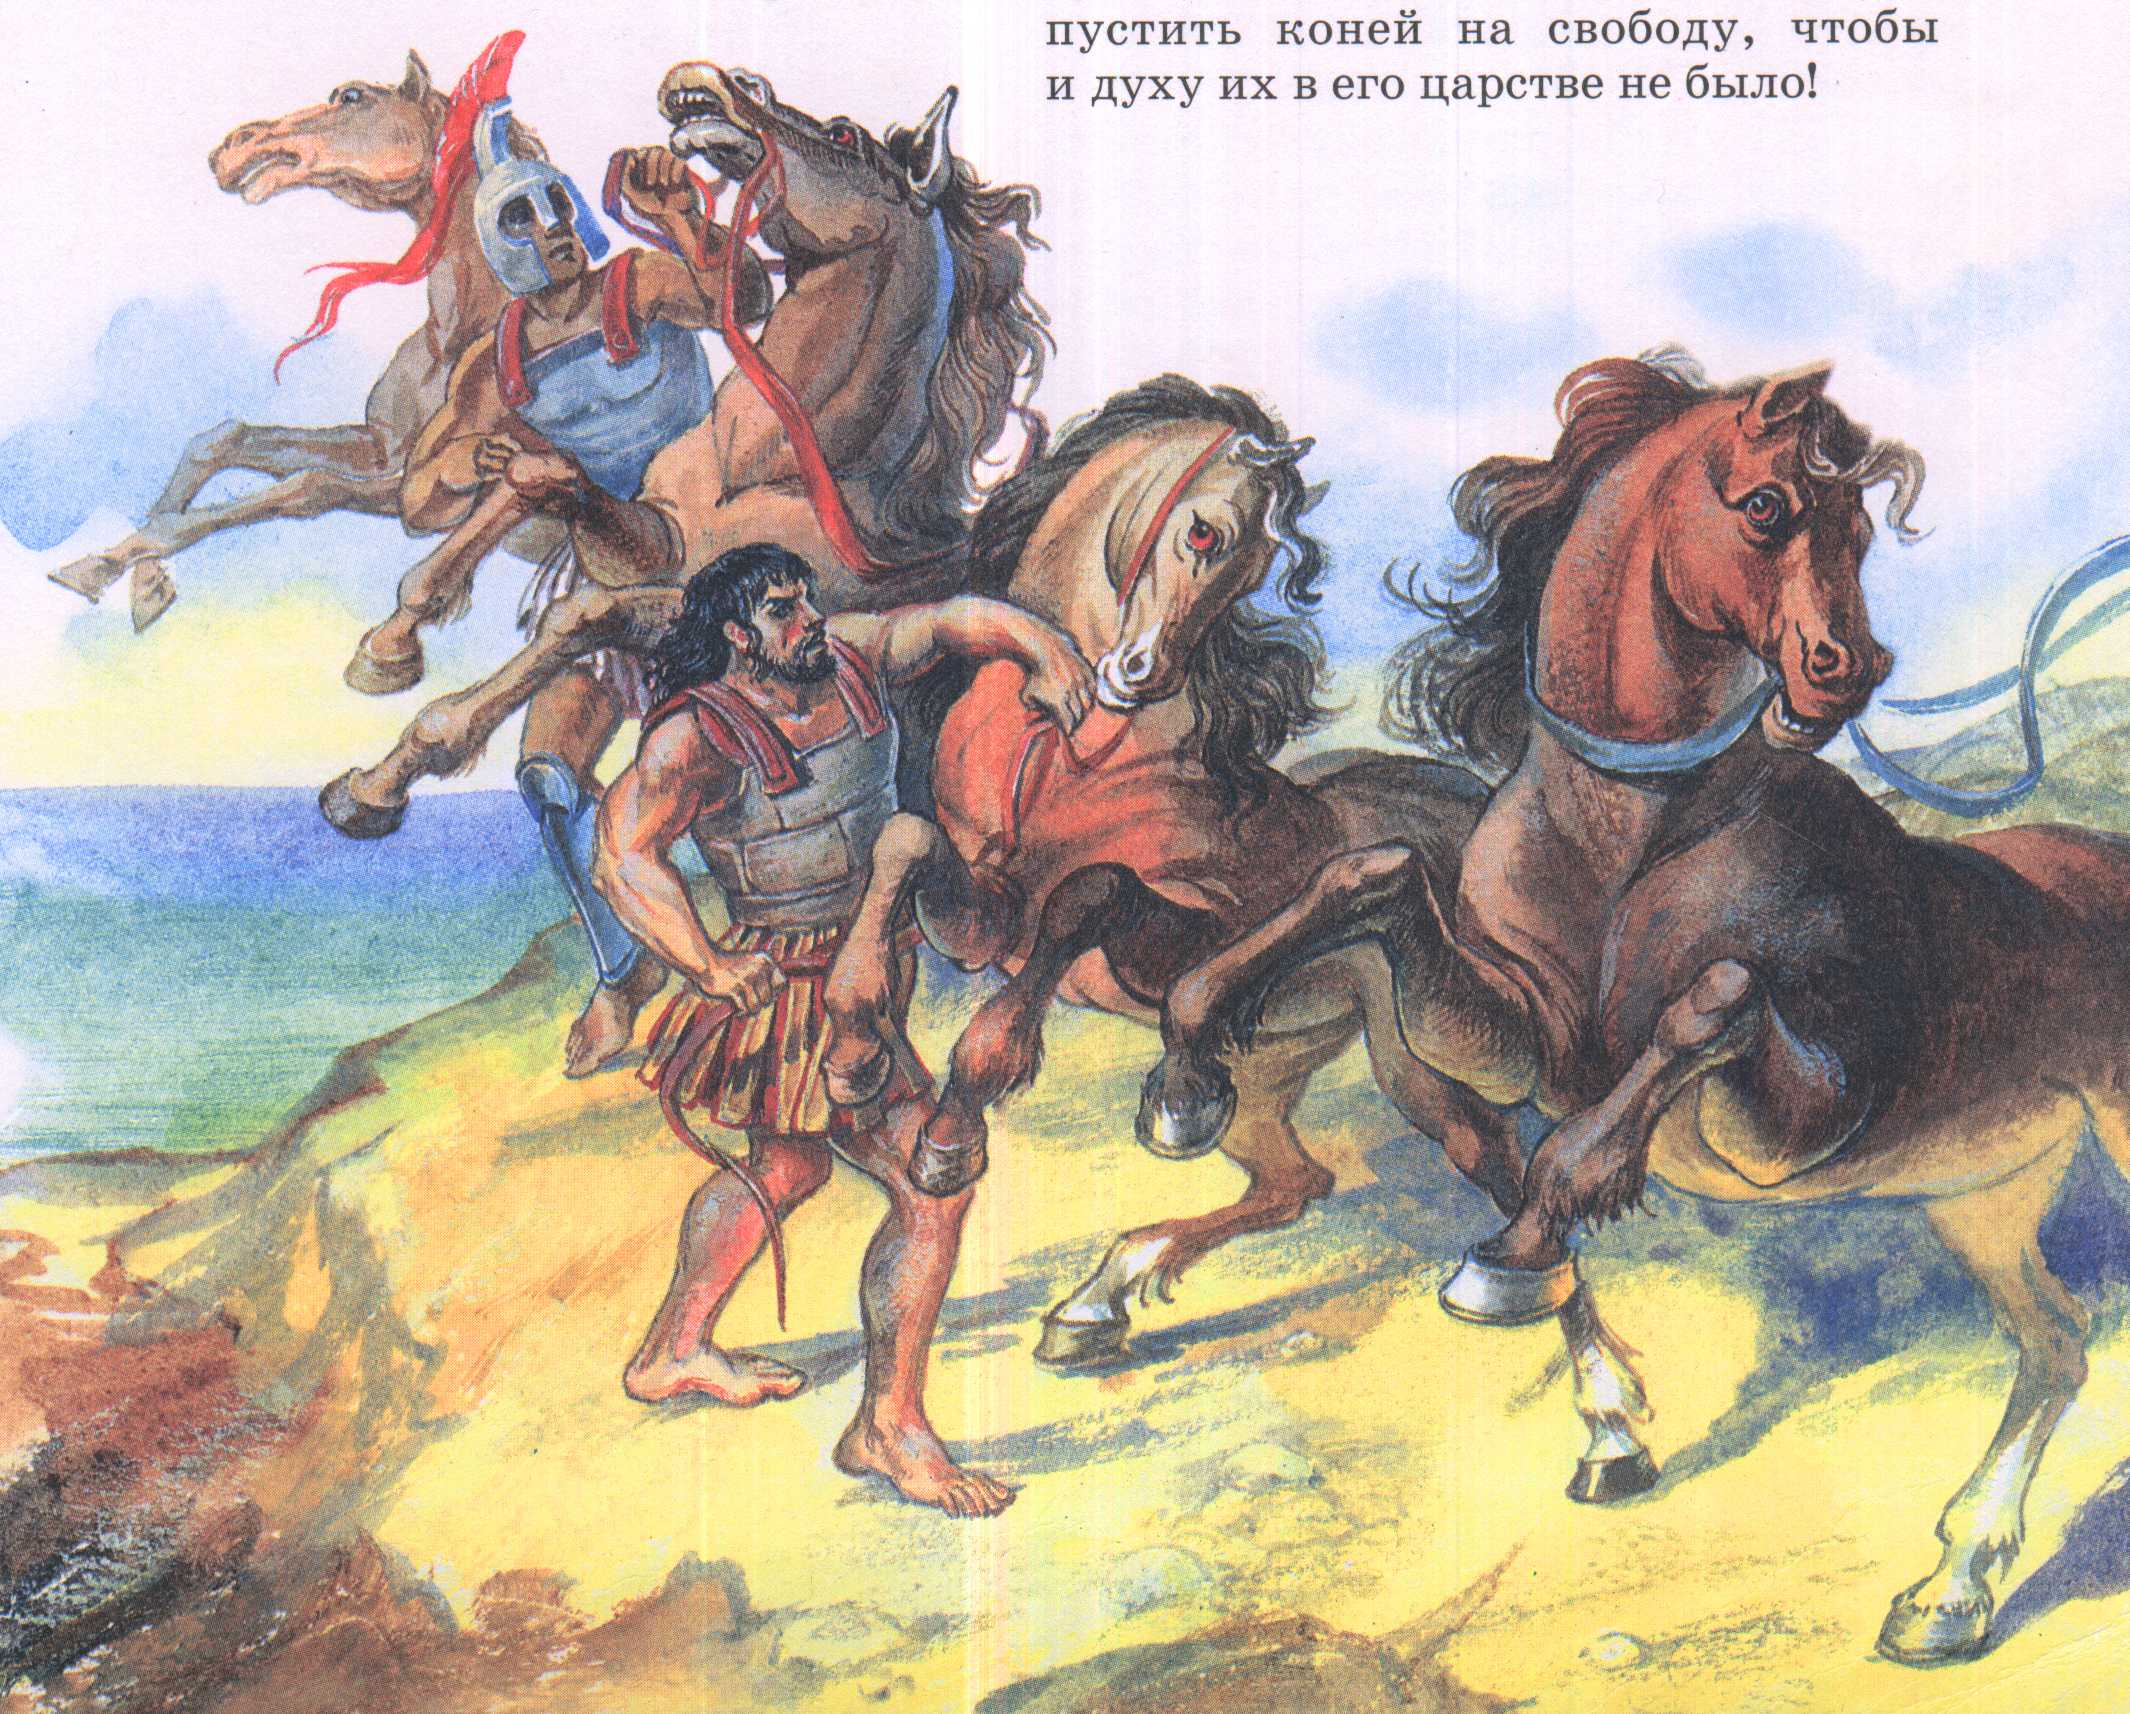 Кони диомеда. Кони Диомеда подвиг Геракла. Восьмой подвиг: кони Диомеда. 12 Подвигов Геракла кони Диомеда. Похищение коней Диомеда подвиг Геракла.